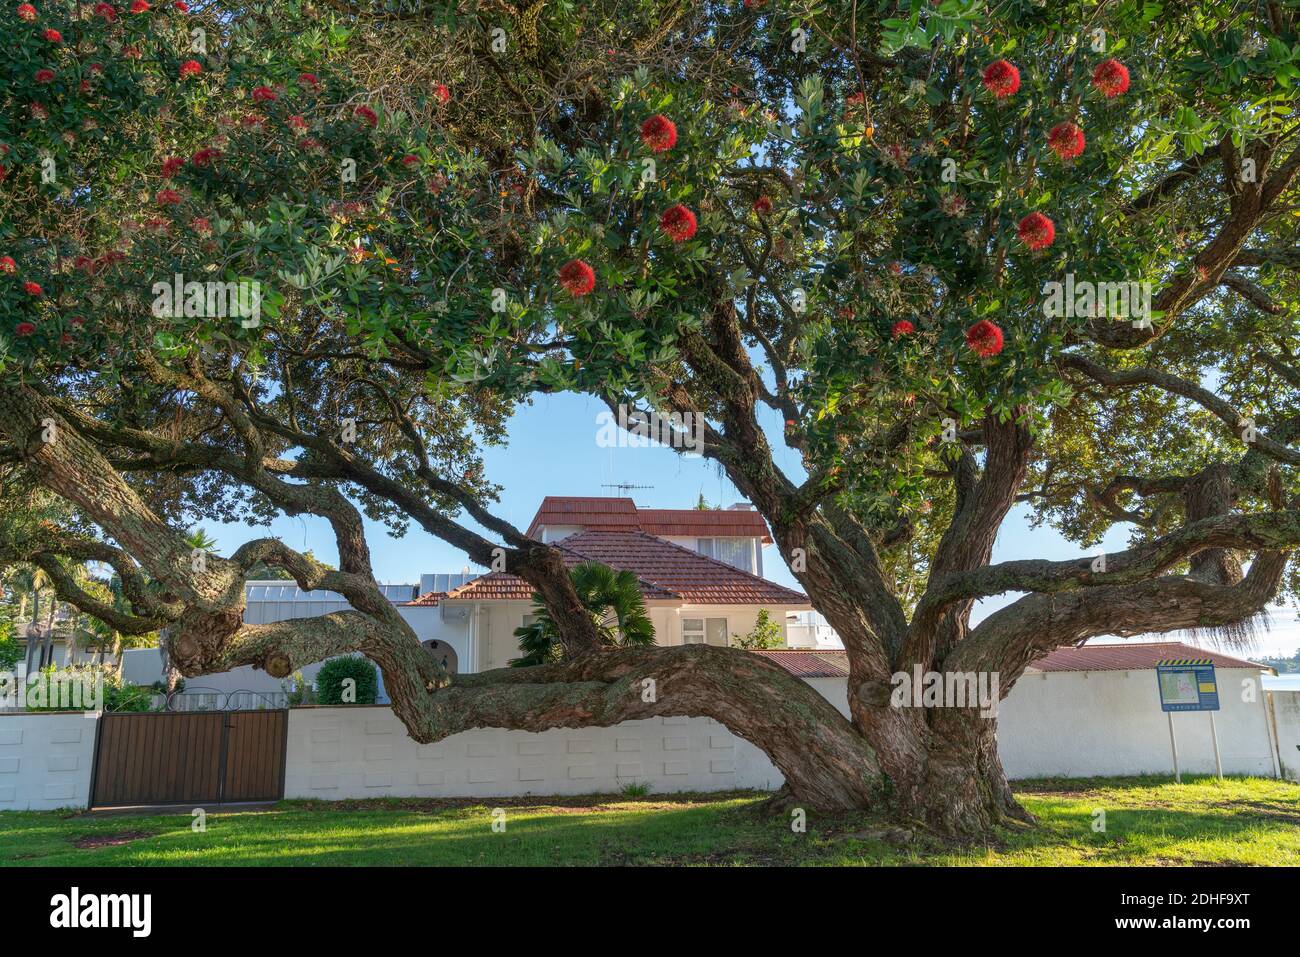 Bel grande albero di pohutukawa in fiore con il suo caratteristico rosso fiori in strada costiera suburbana Foto Stock